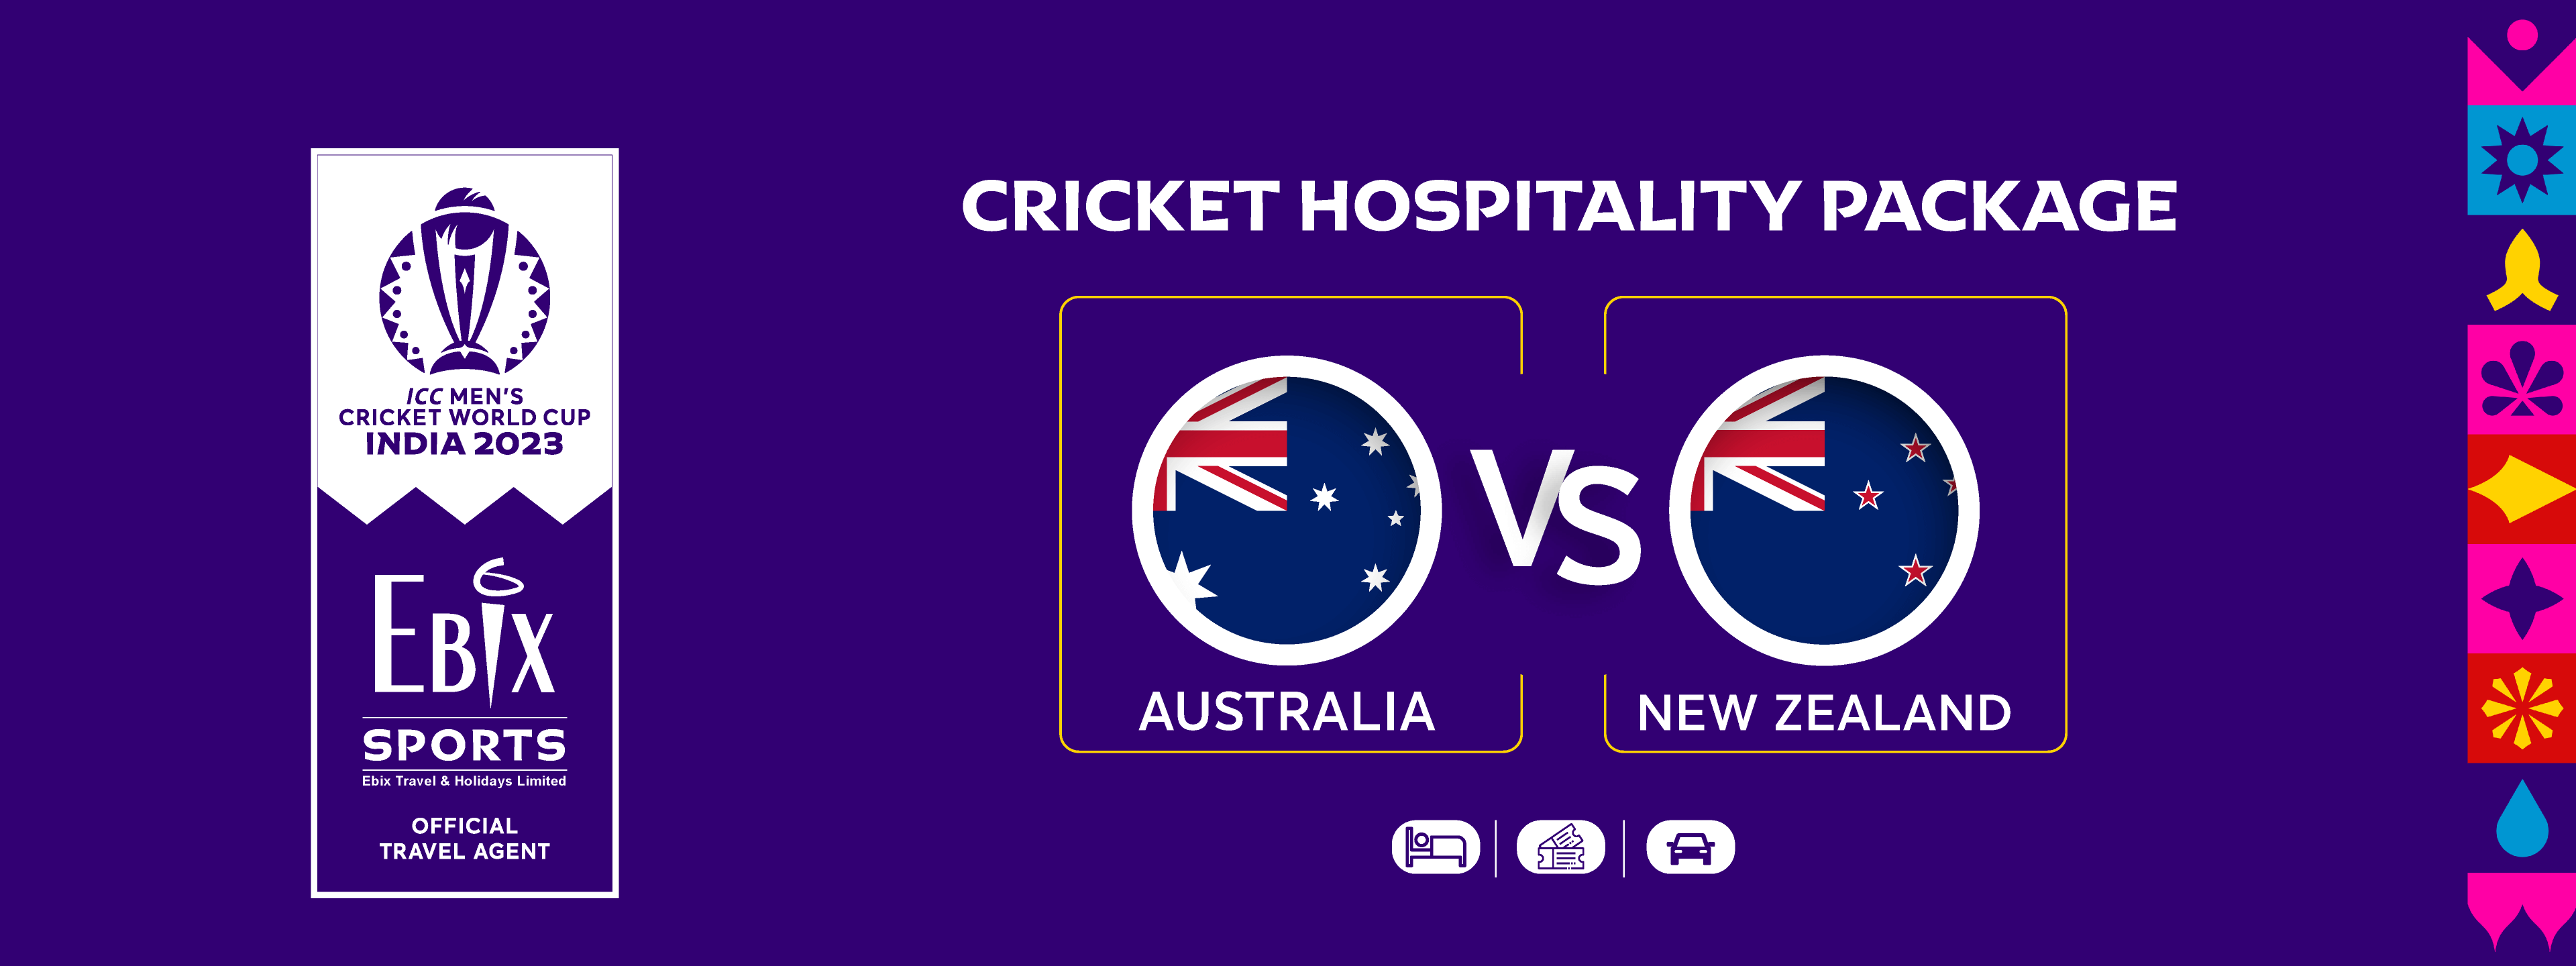 Australia v/s New Zealand